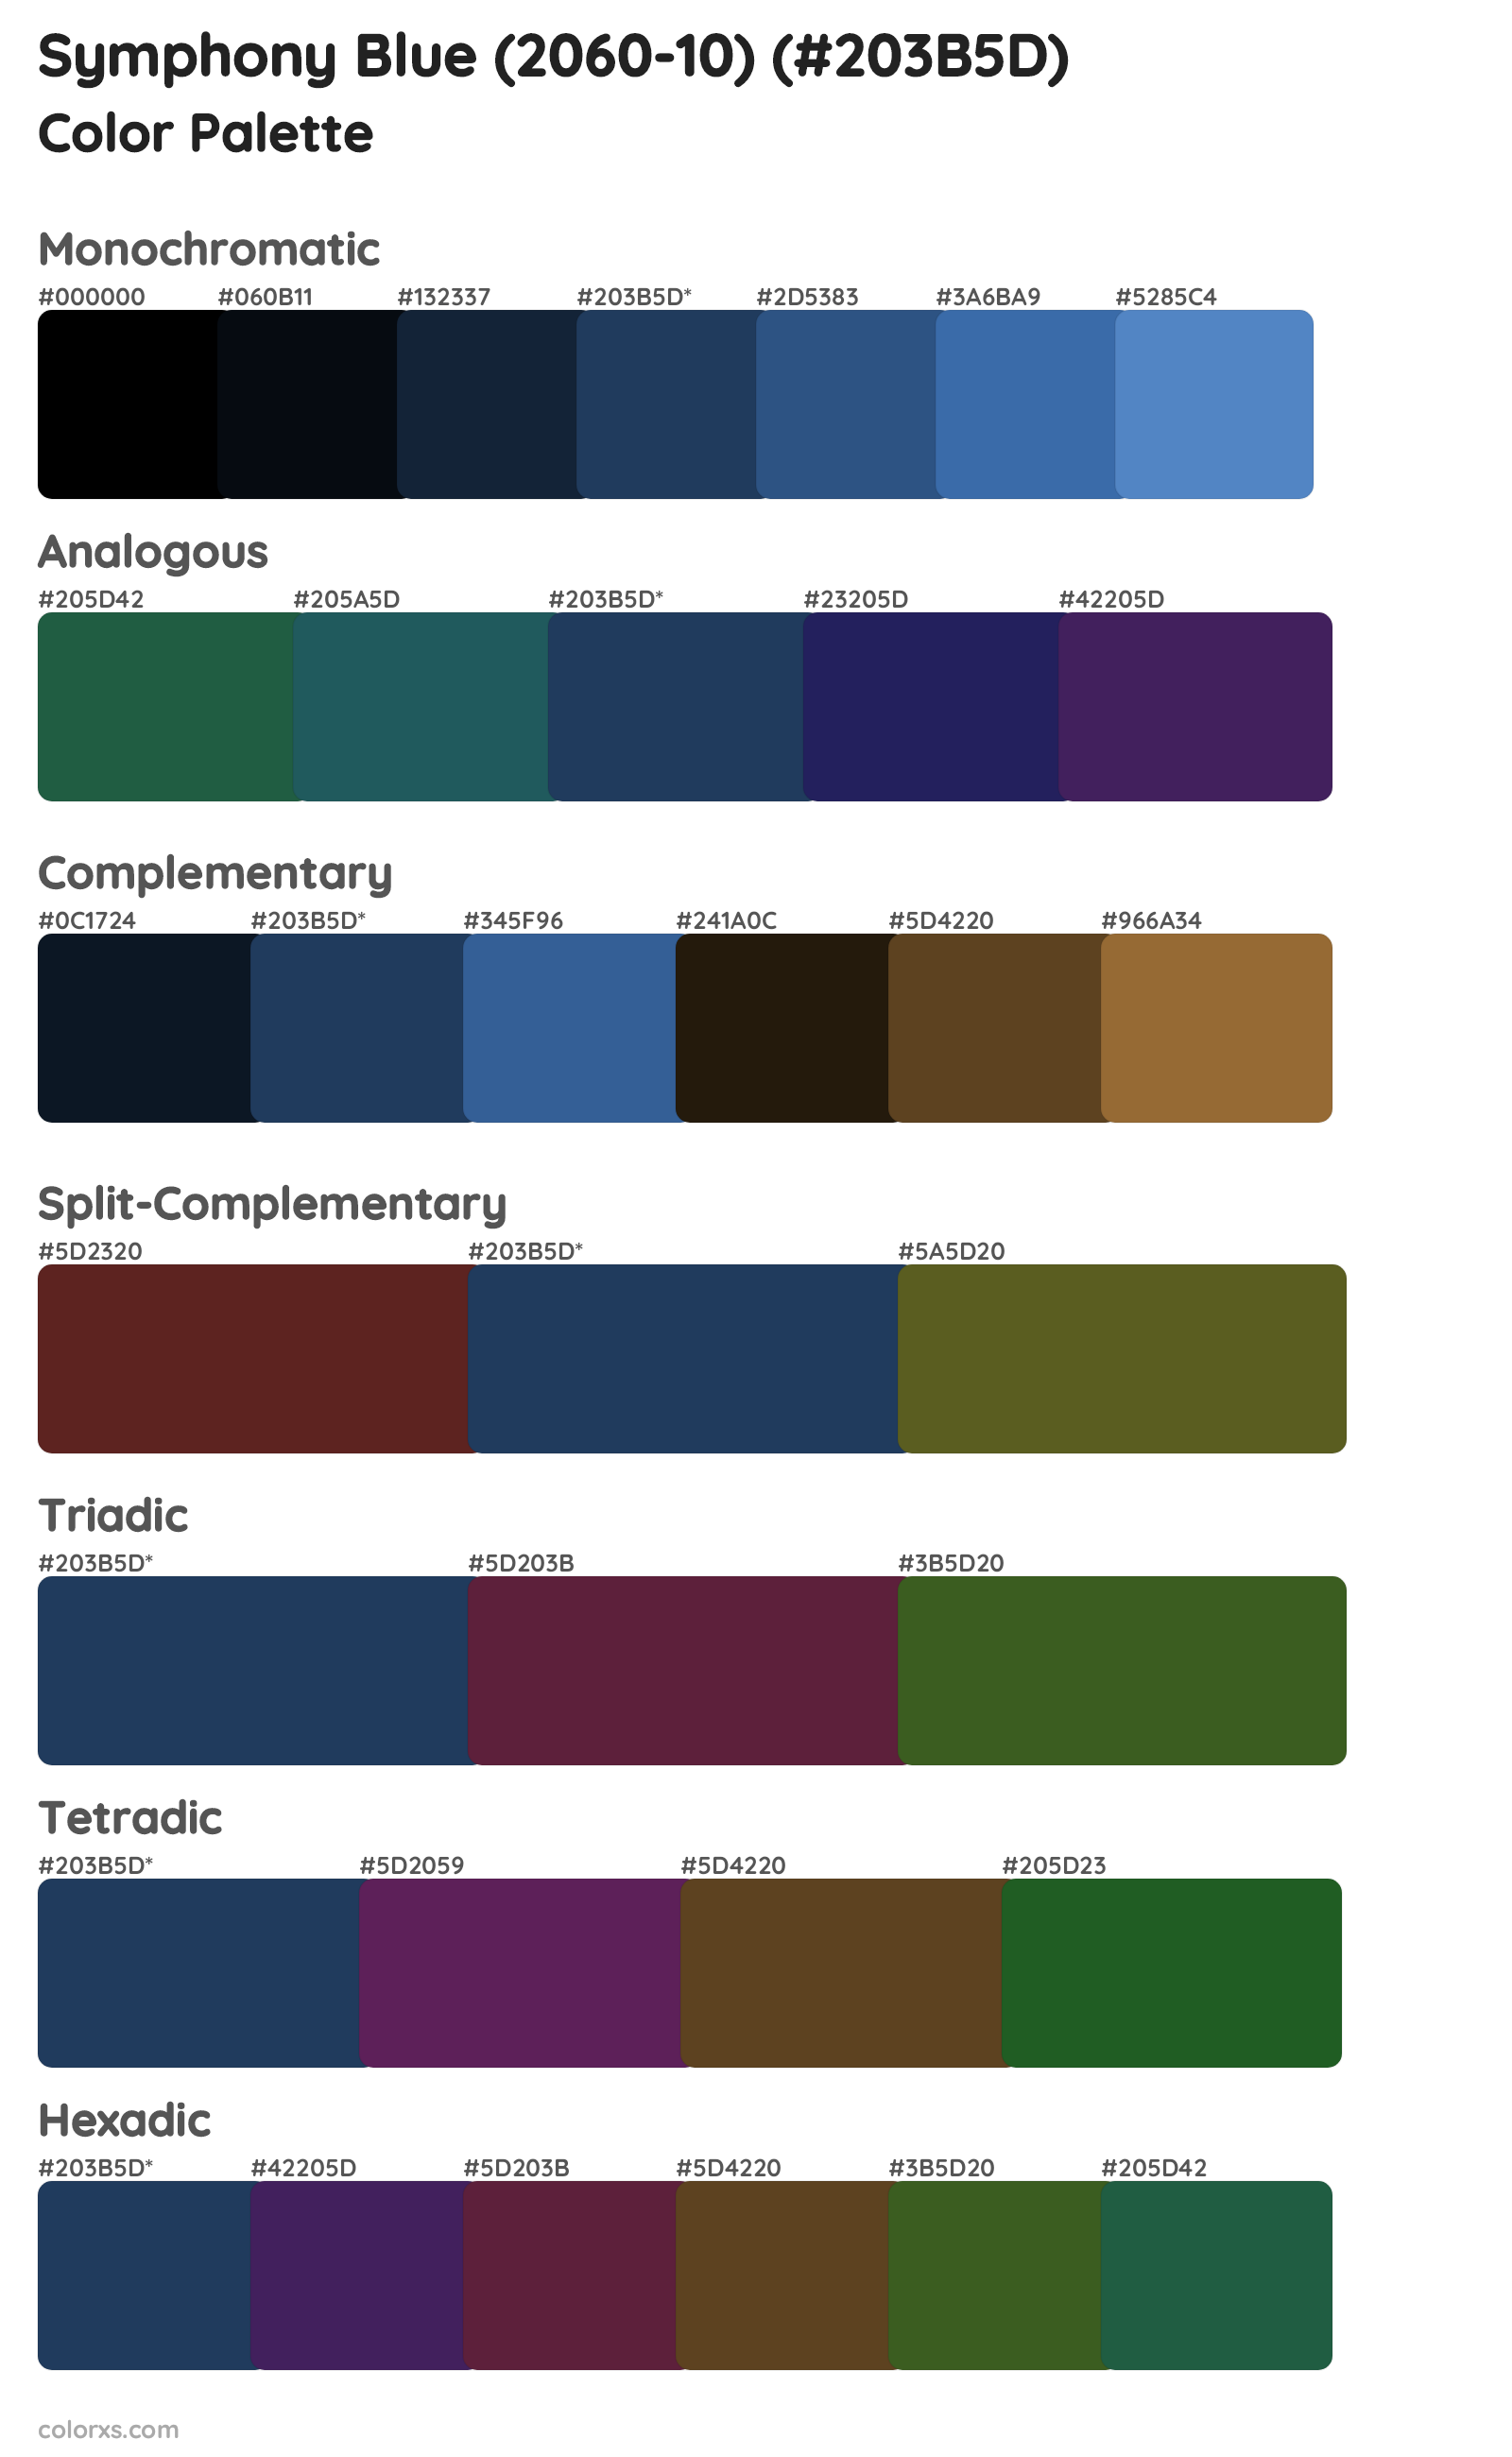 Symphony Blue (2060-10) Color Scheme Palettes